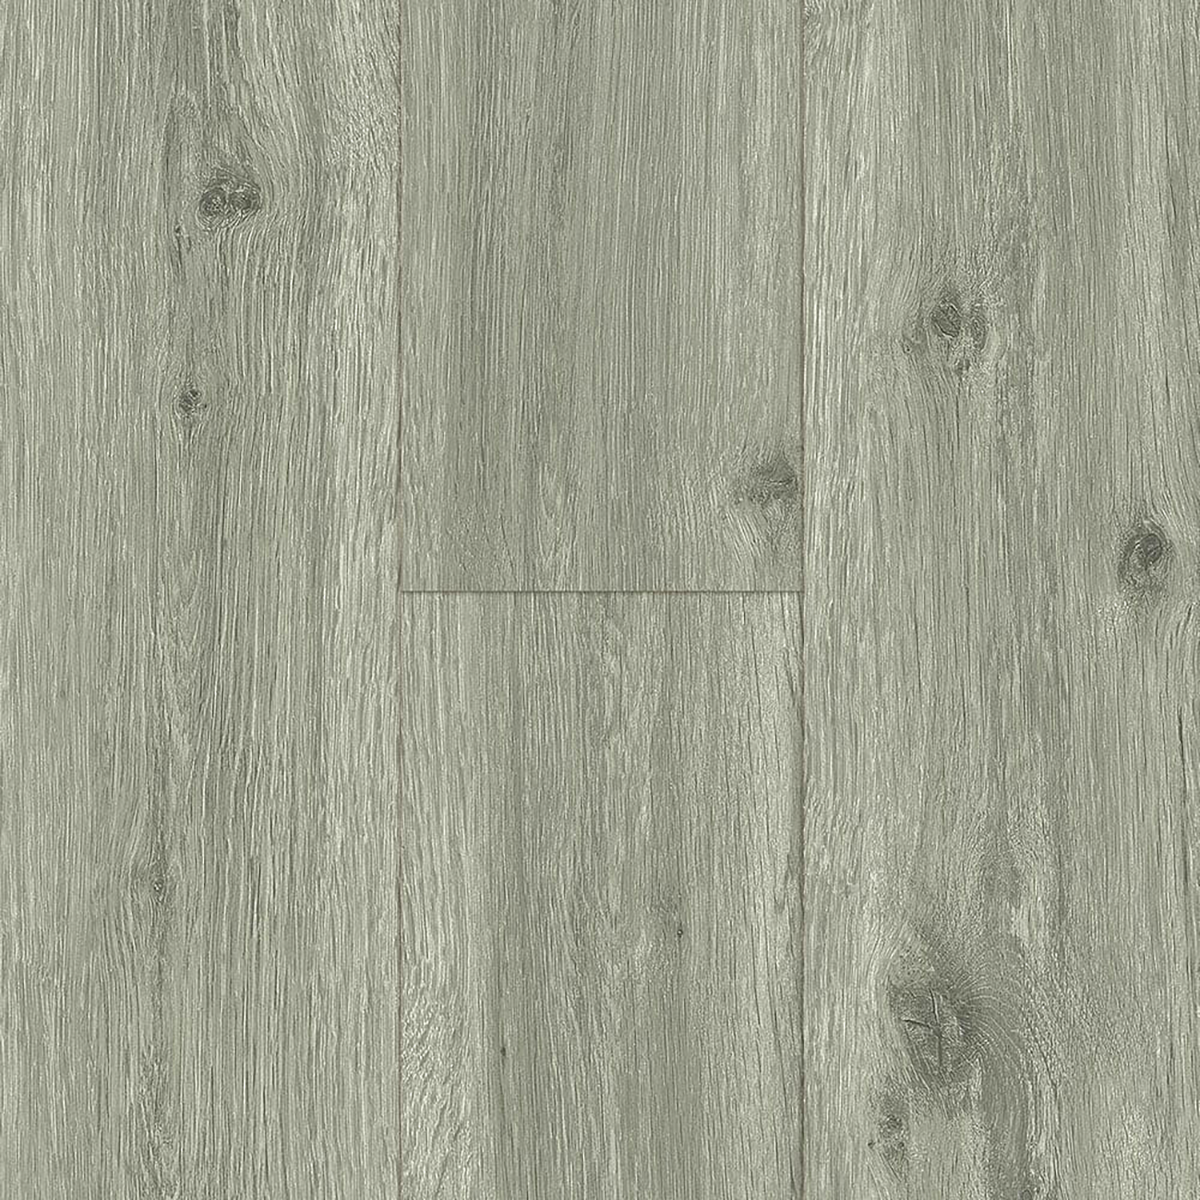 LVP - Gray Oak - Wide Plank Flooring - 7.2 inch wide plank